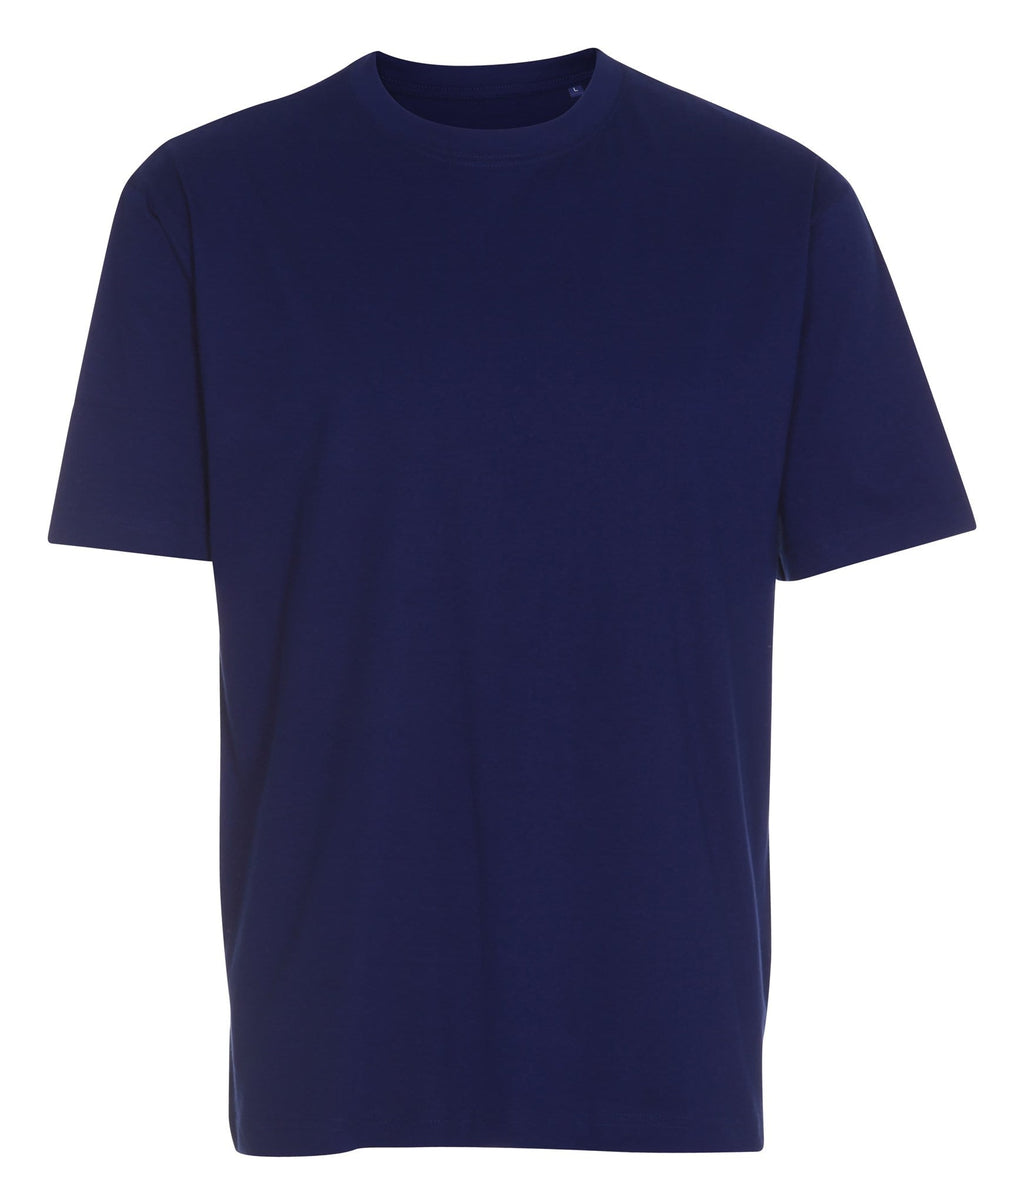 Negabaritiniai marškinėliai - kobalto mėlyna spalva